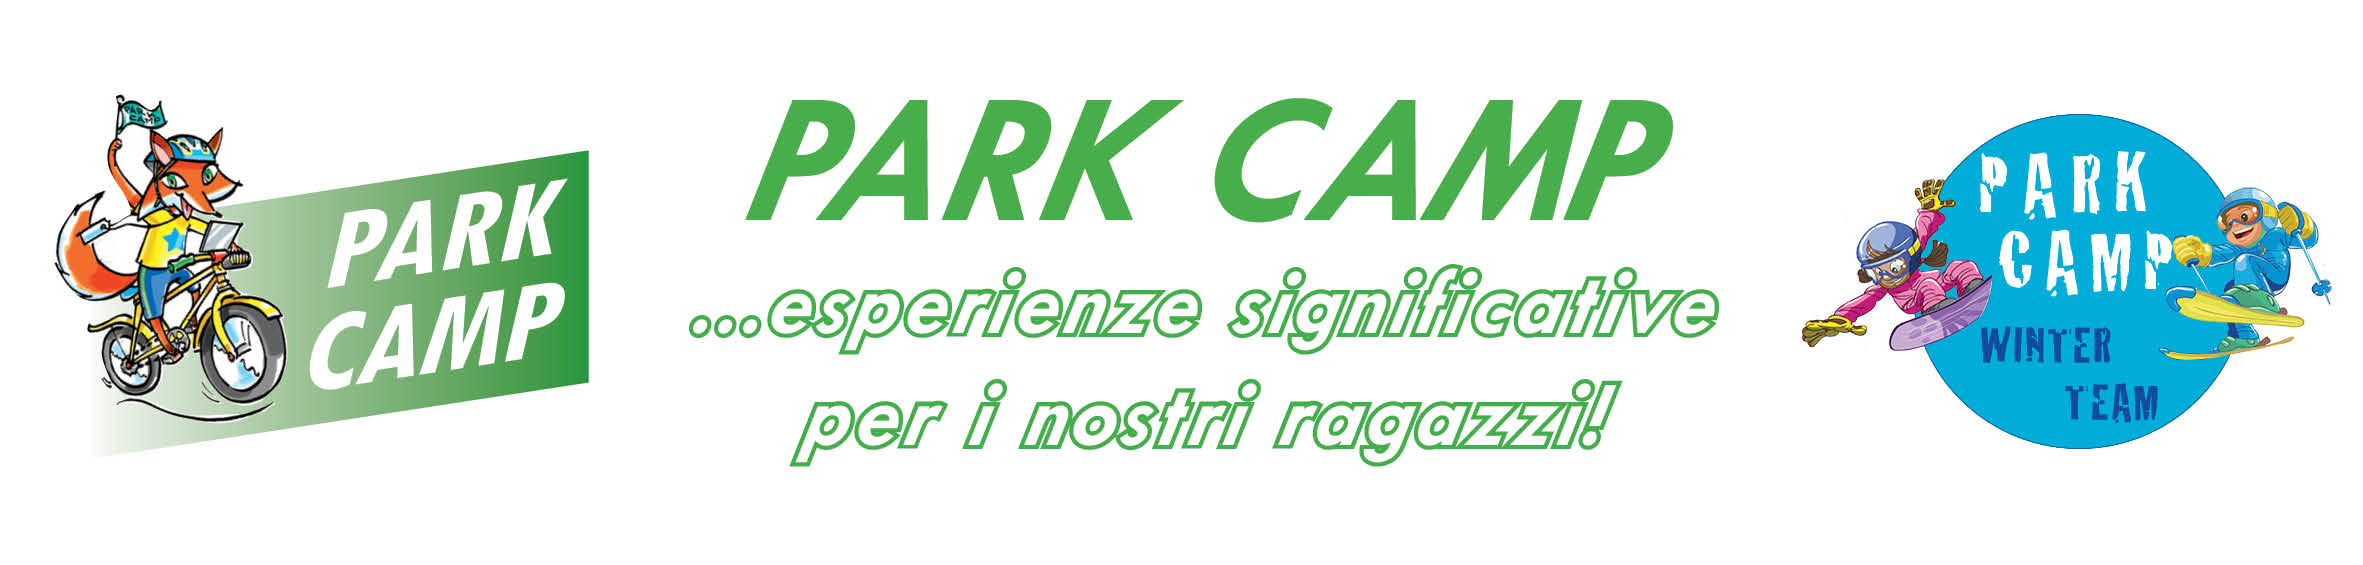 Parkcamp